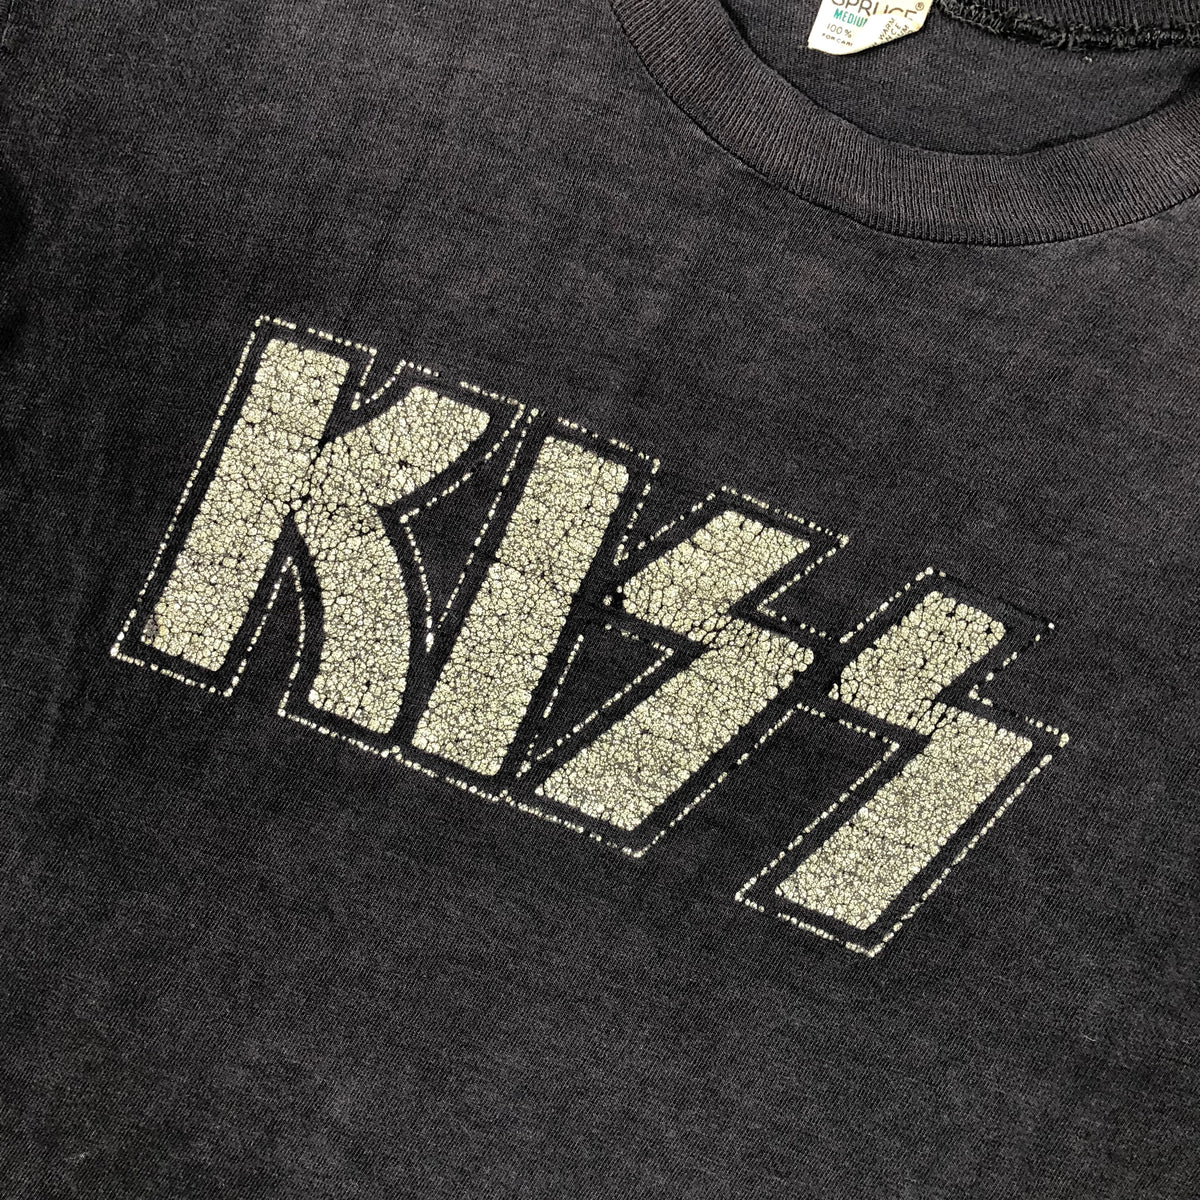 Vintage KISS &quot;Logo&quot; T-Shirt - jointcustodydc